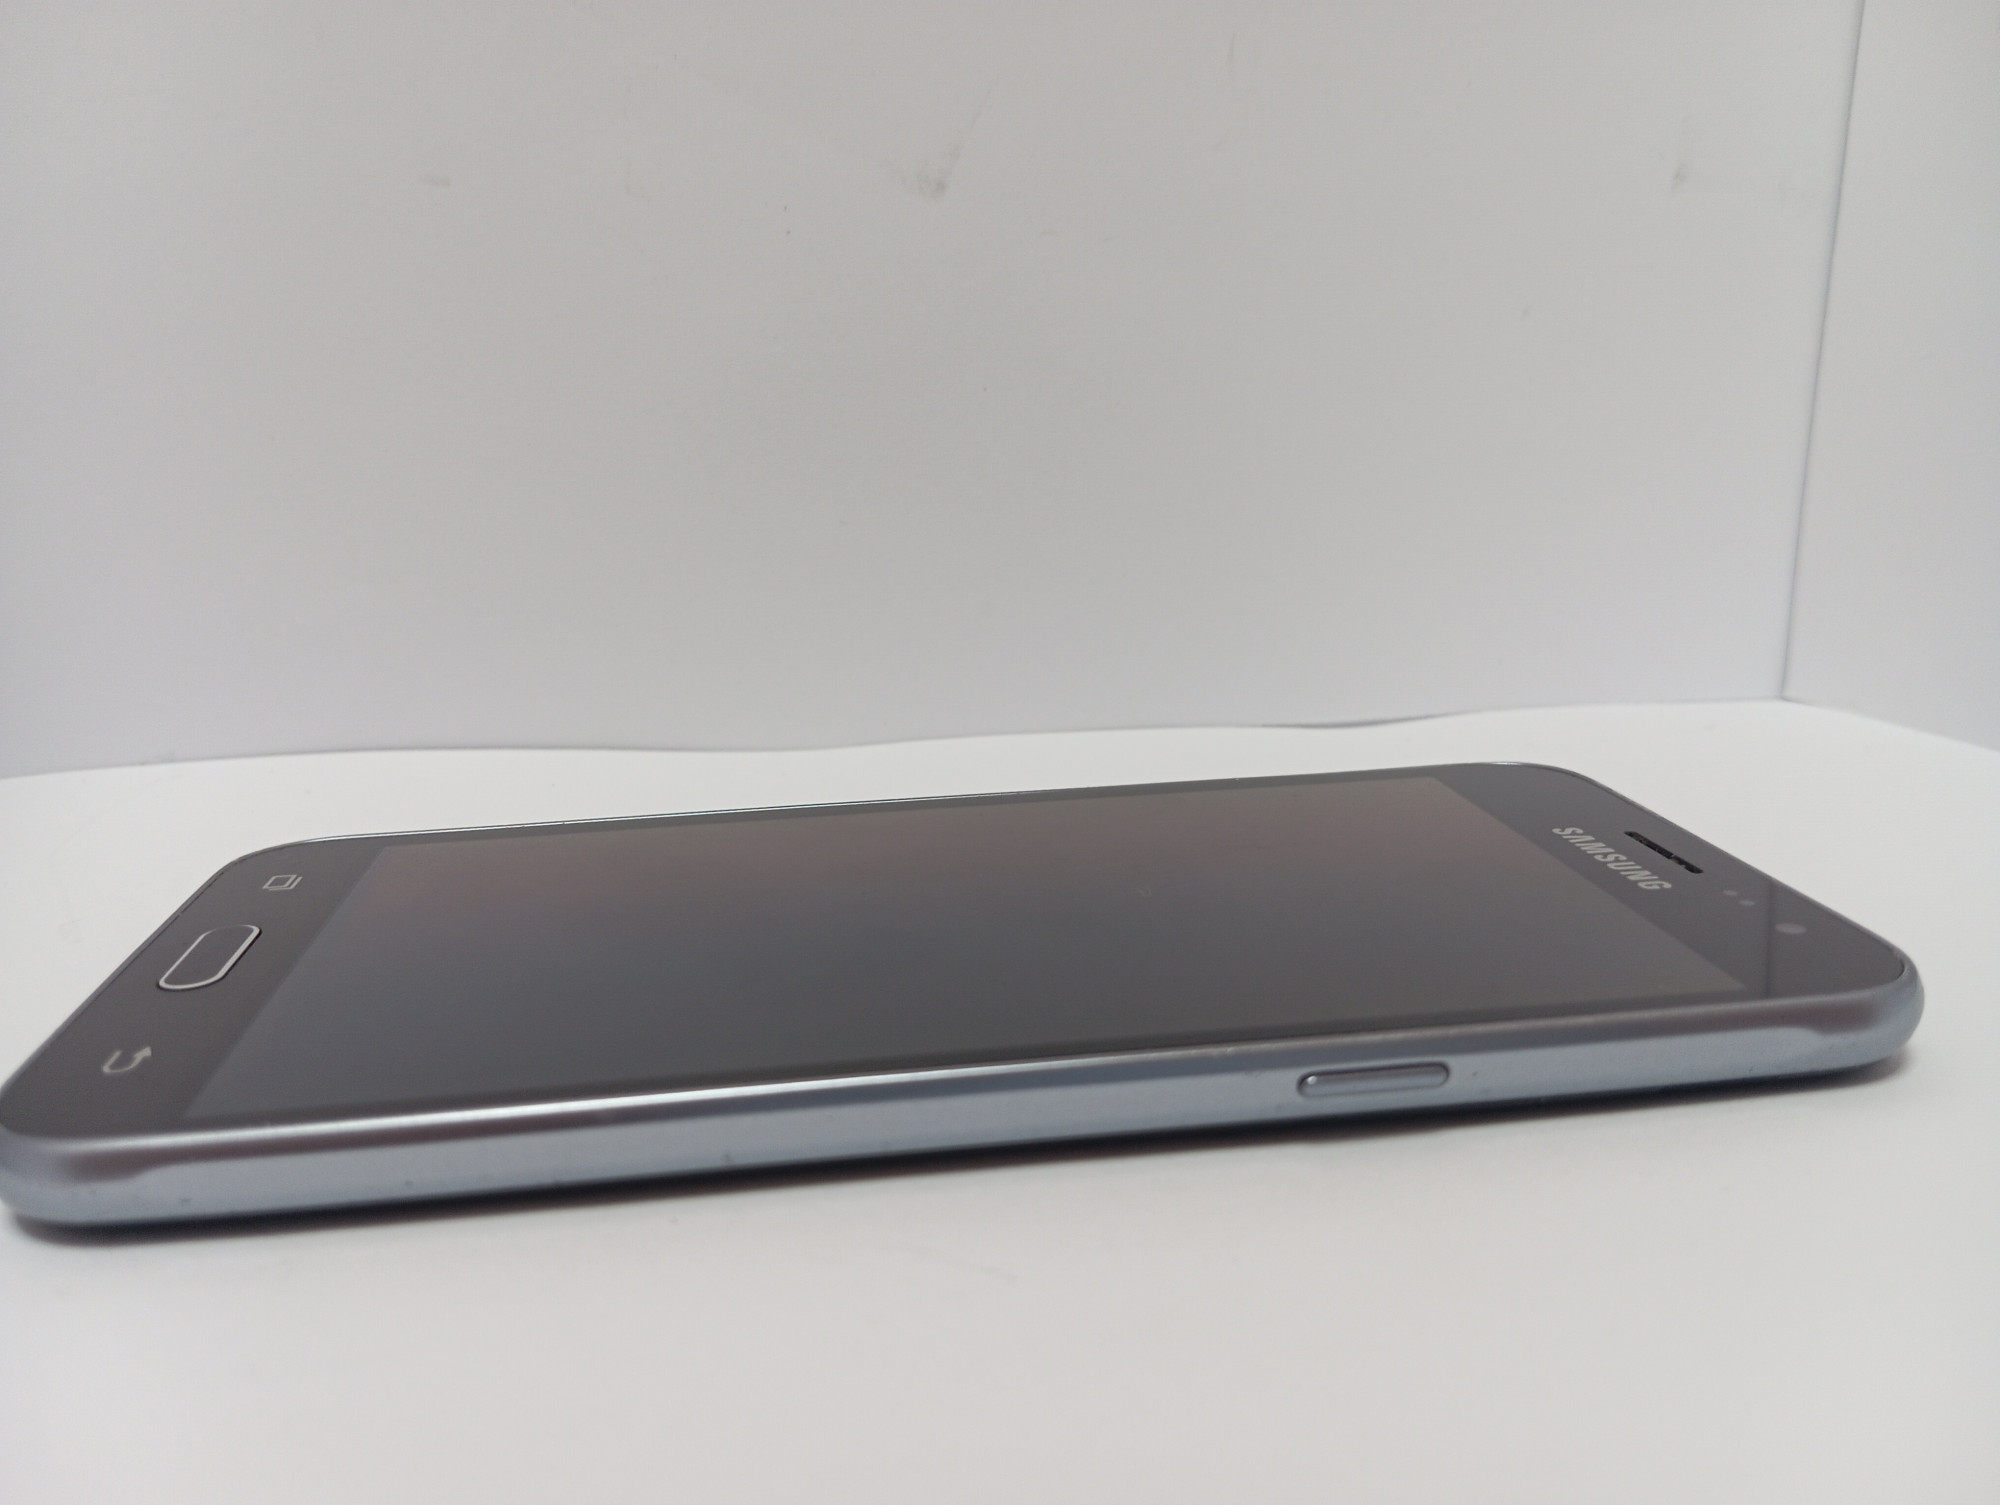 Samsung Galaxy J3 (SM-J320F) 1/8Gb 6